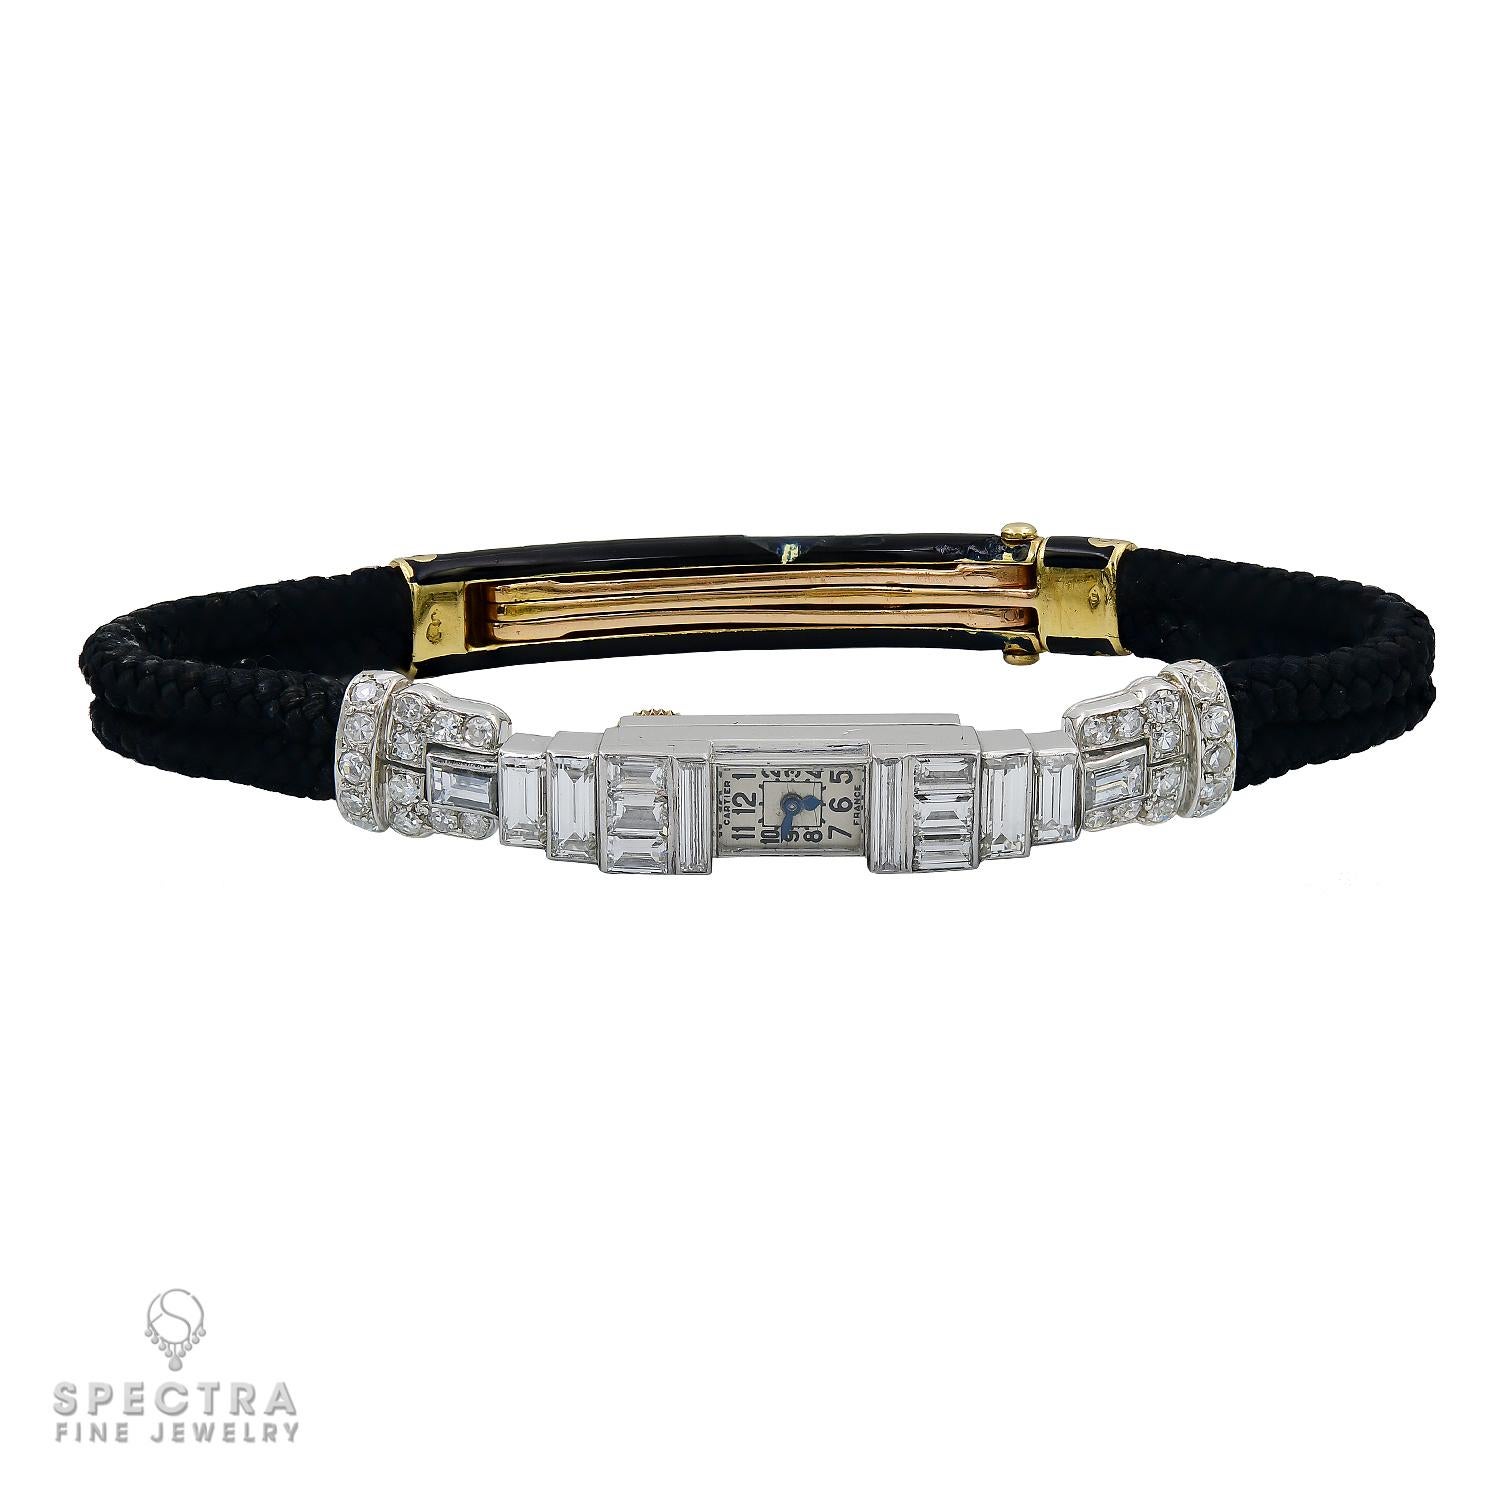 La montre-bracelet Art déco à diamants de Cartier reflète le style iconique de l'Art déco, caractérisé par ses formes géométriques, ses formes épurées et ses matériaux luxueux. Fabriquée avec une attention méticuleuse aux détails, cette étonnante